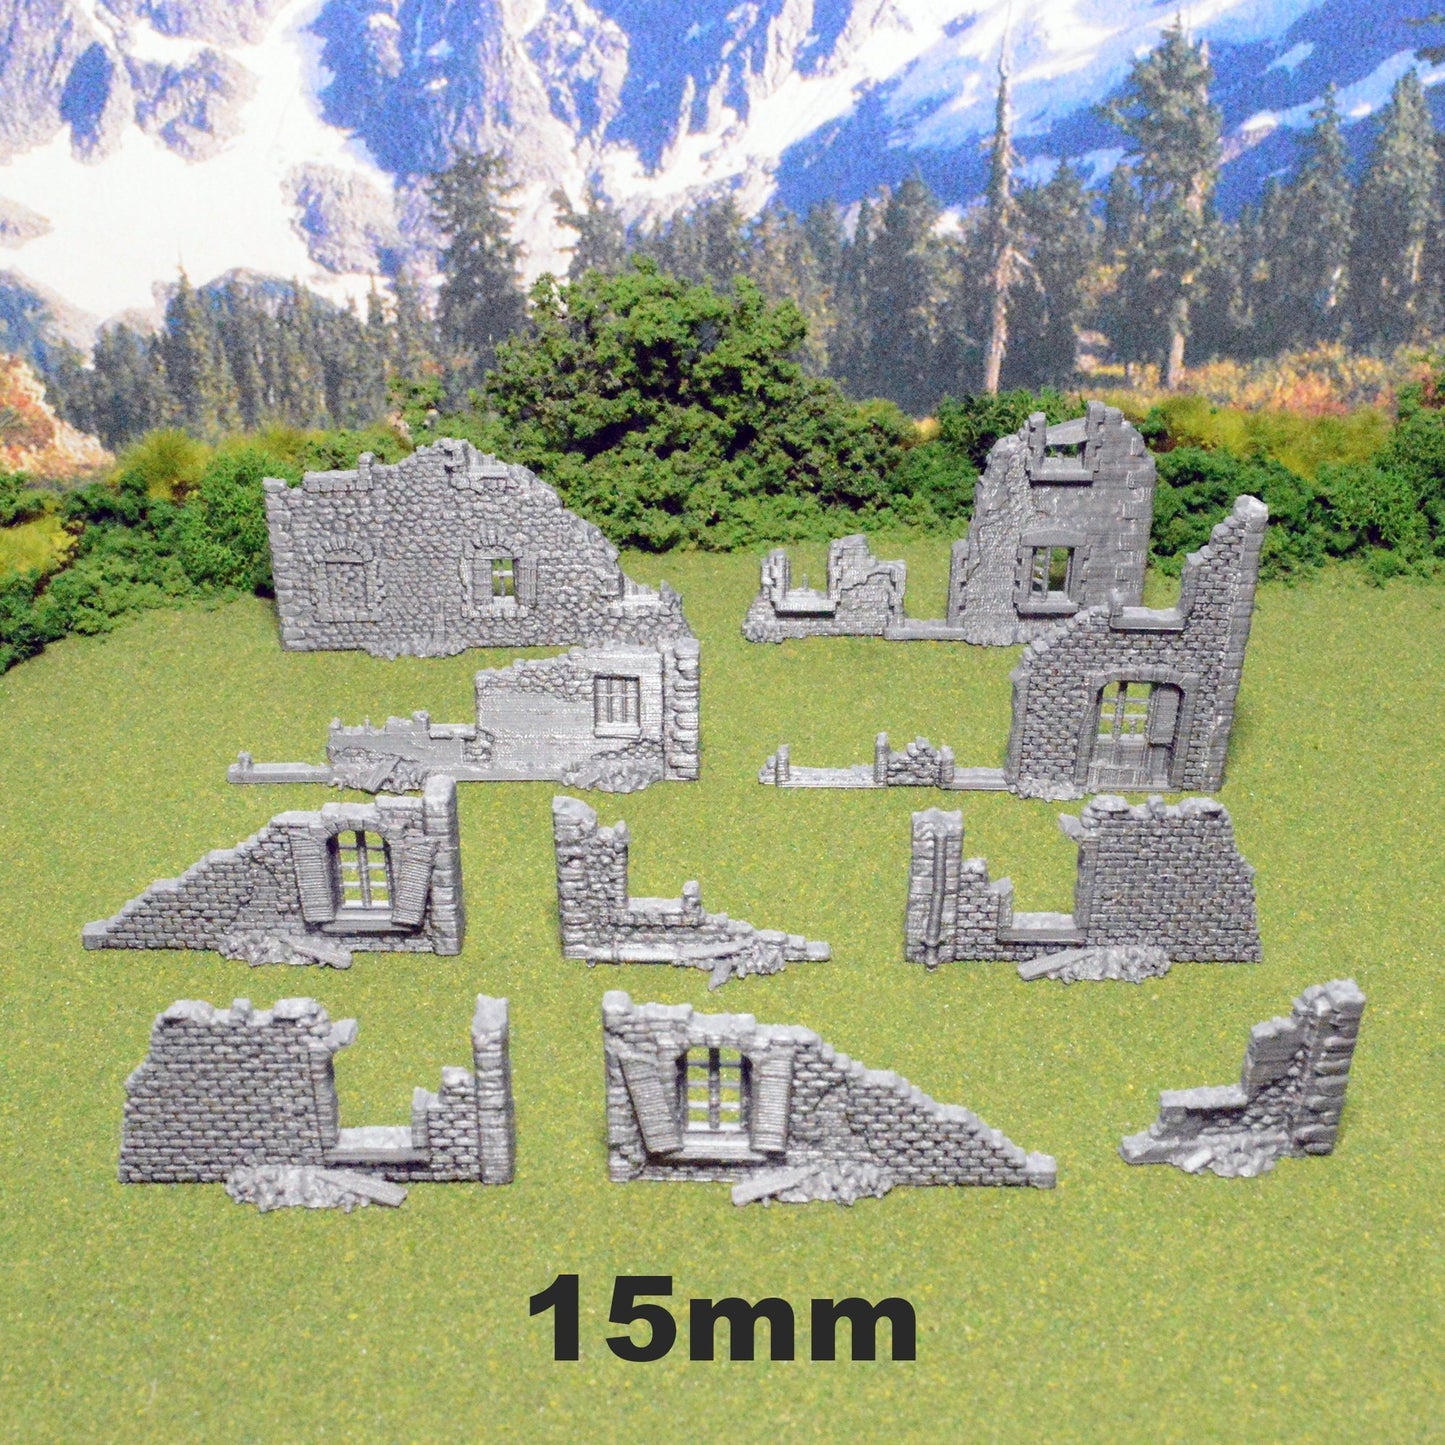 Miniature Town Ruins 15mm 28mm 32mm for Warhammer 40k Wargame, Flames of War D&D Ruined Walls, Fallout, Modular OpenLOCK